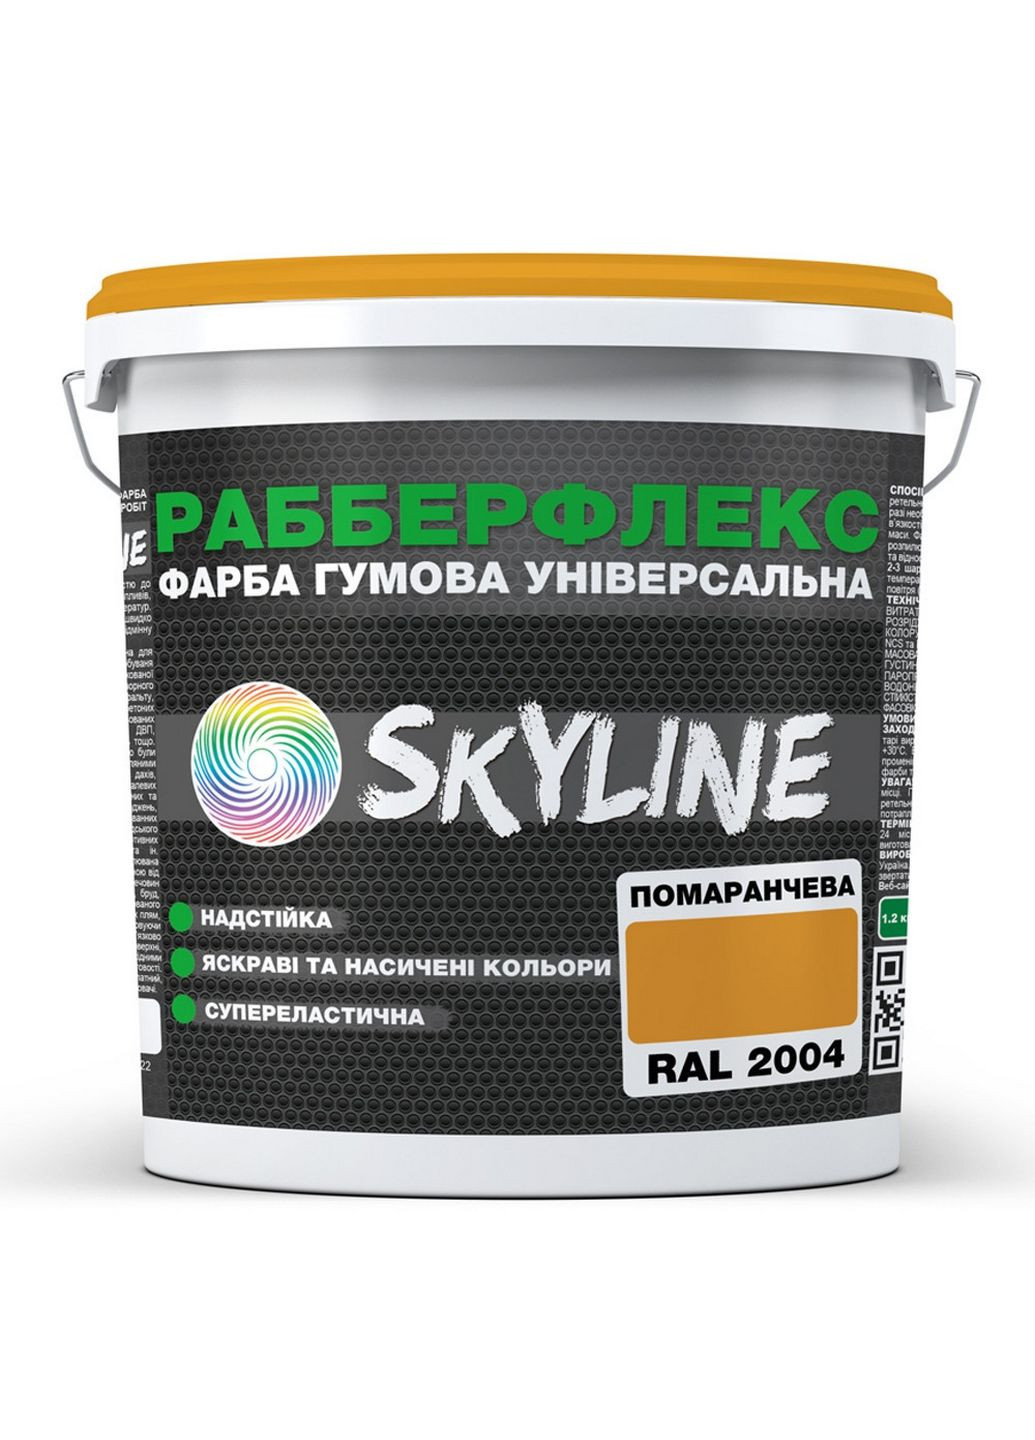 Надстійка фарба гумова супереластична «РабберФлекс» 12 кг SkyLine (289363695)